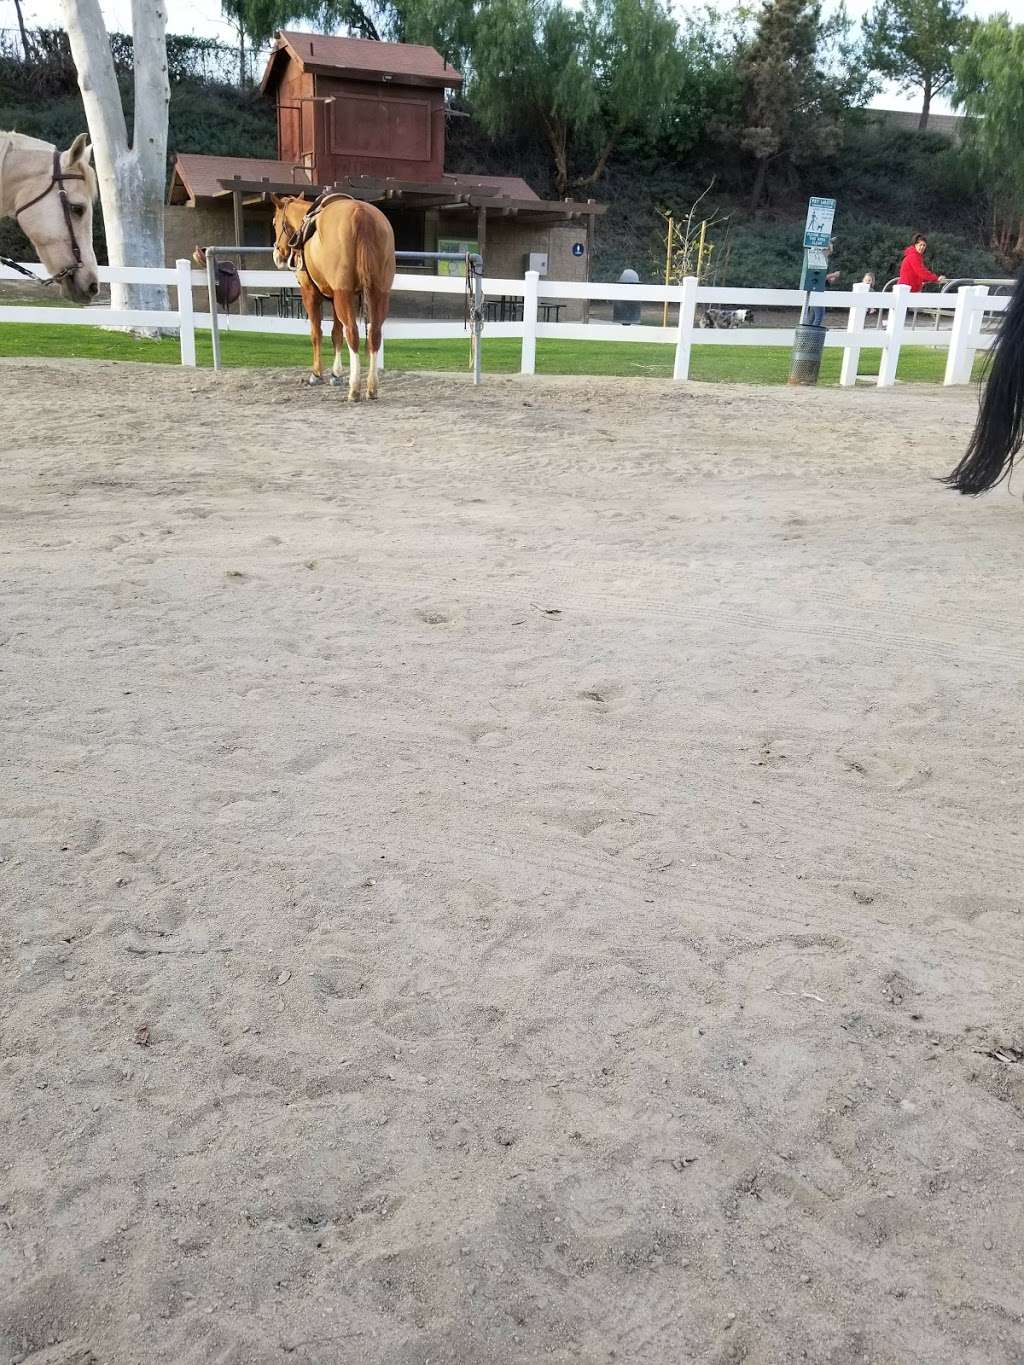 Buena Vista Equestrian Center | Yorba Linda, CA 92886, USA